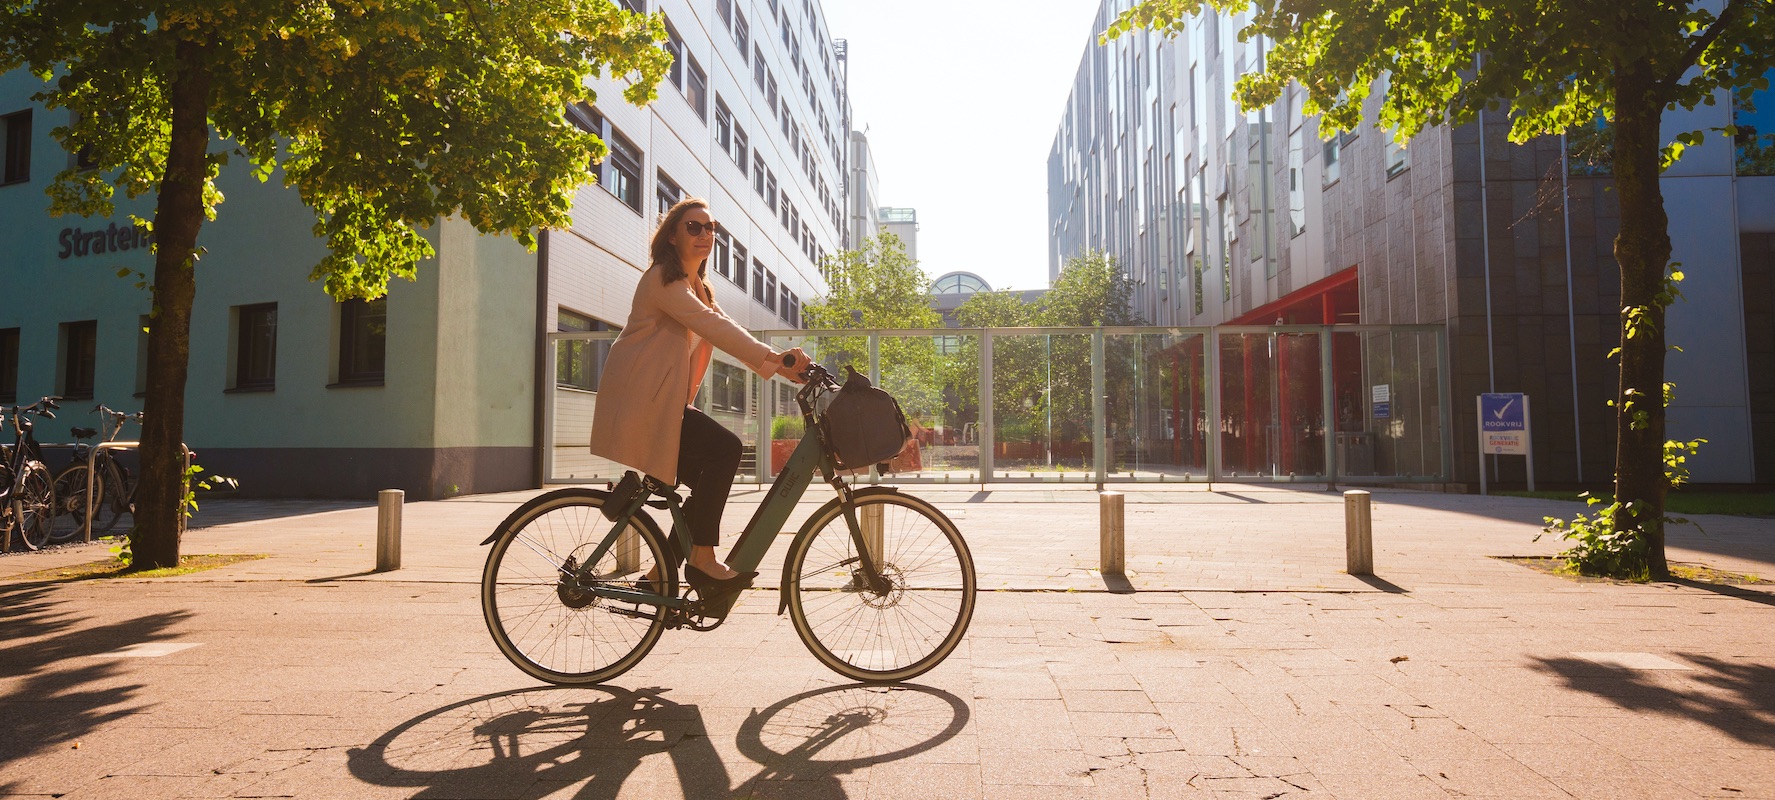 Vrouw op e-bike op weg naar werk